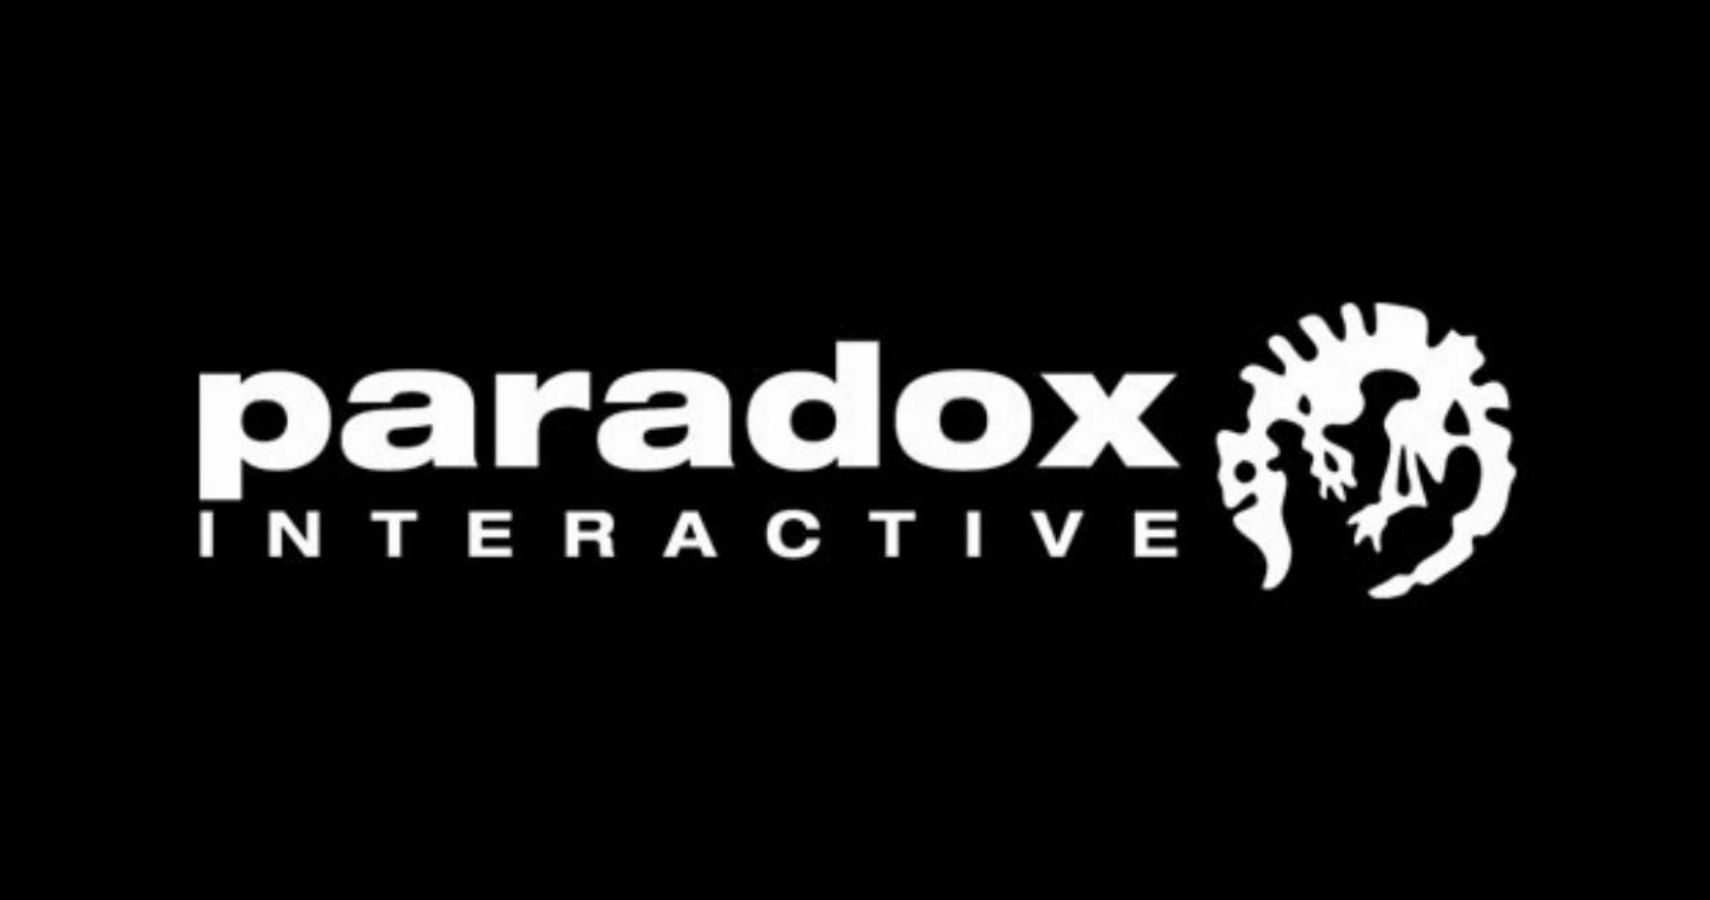 paradox-interactive-logo-black-5087366